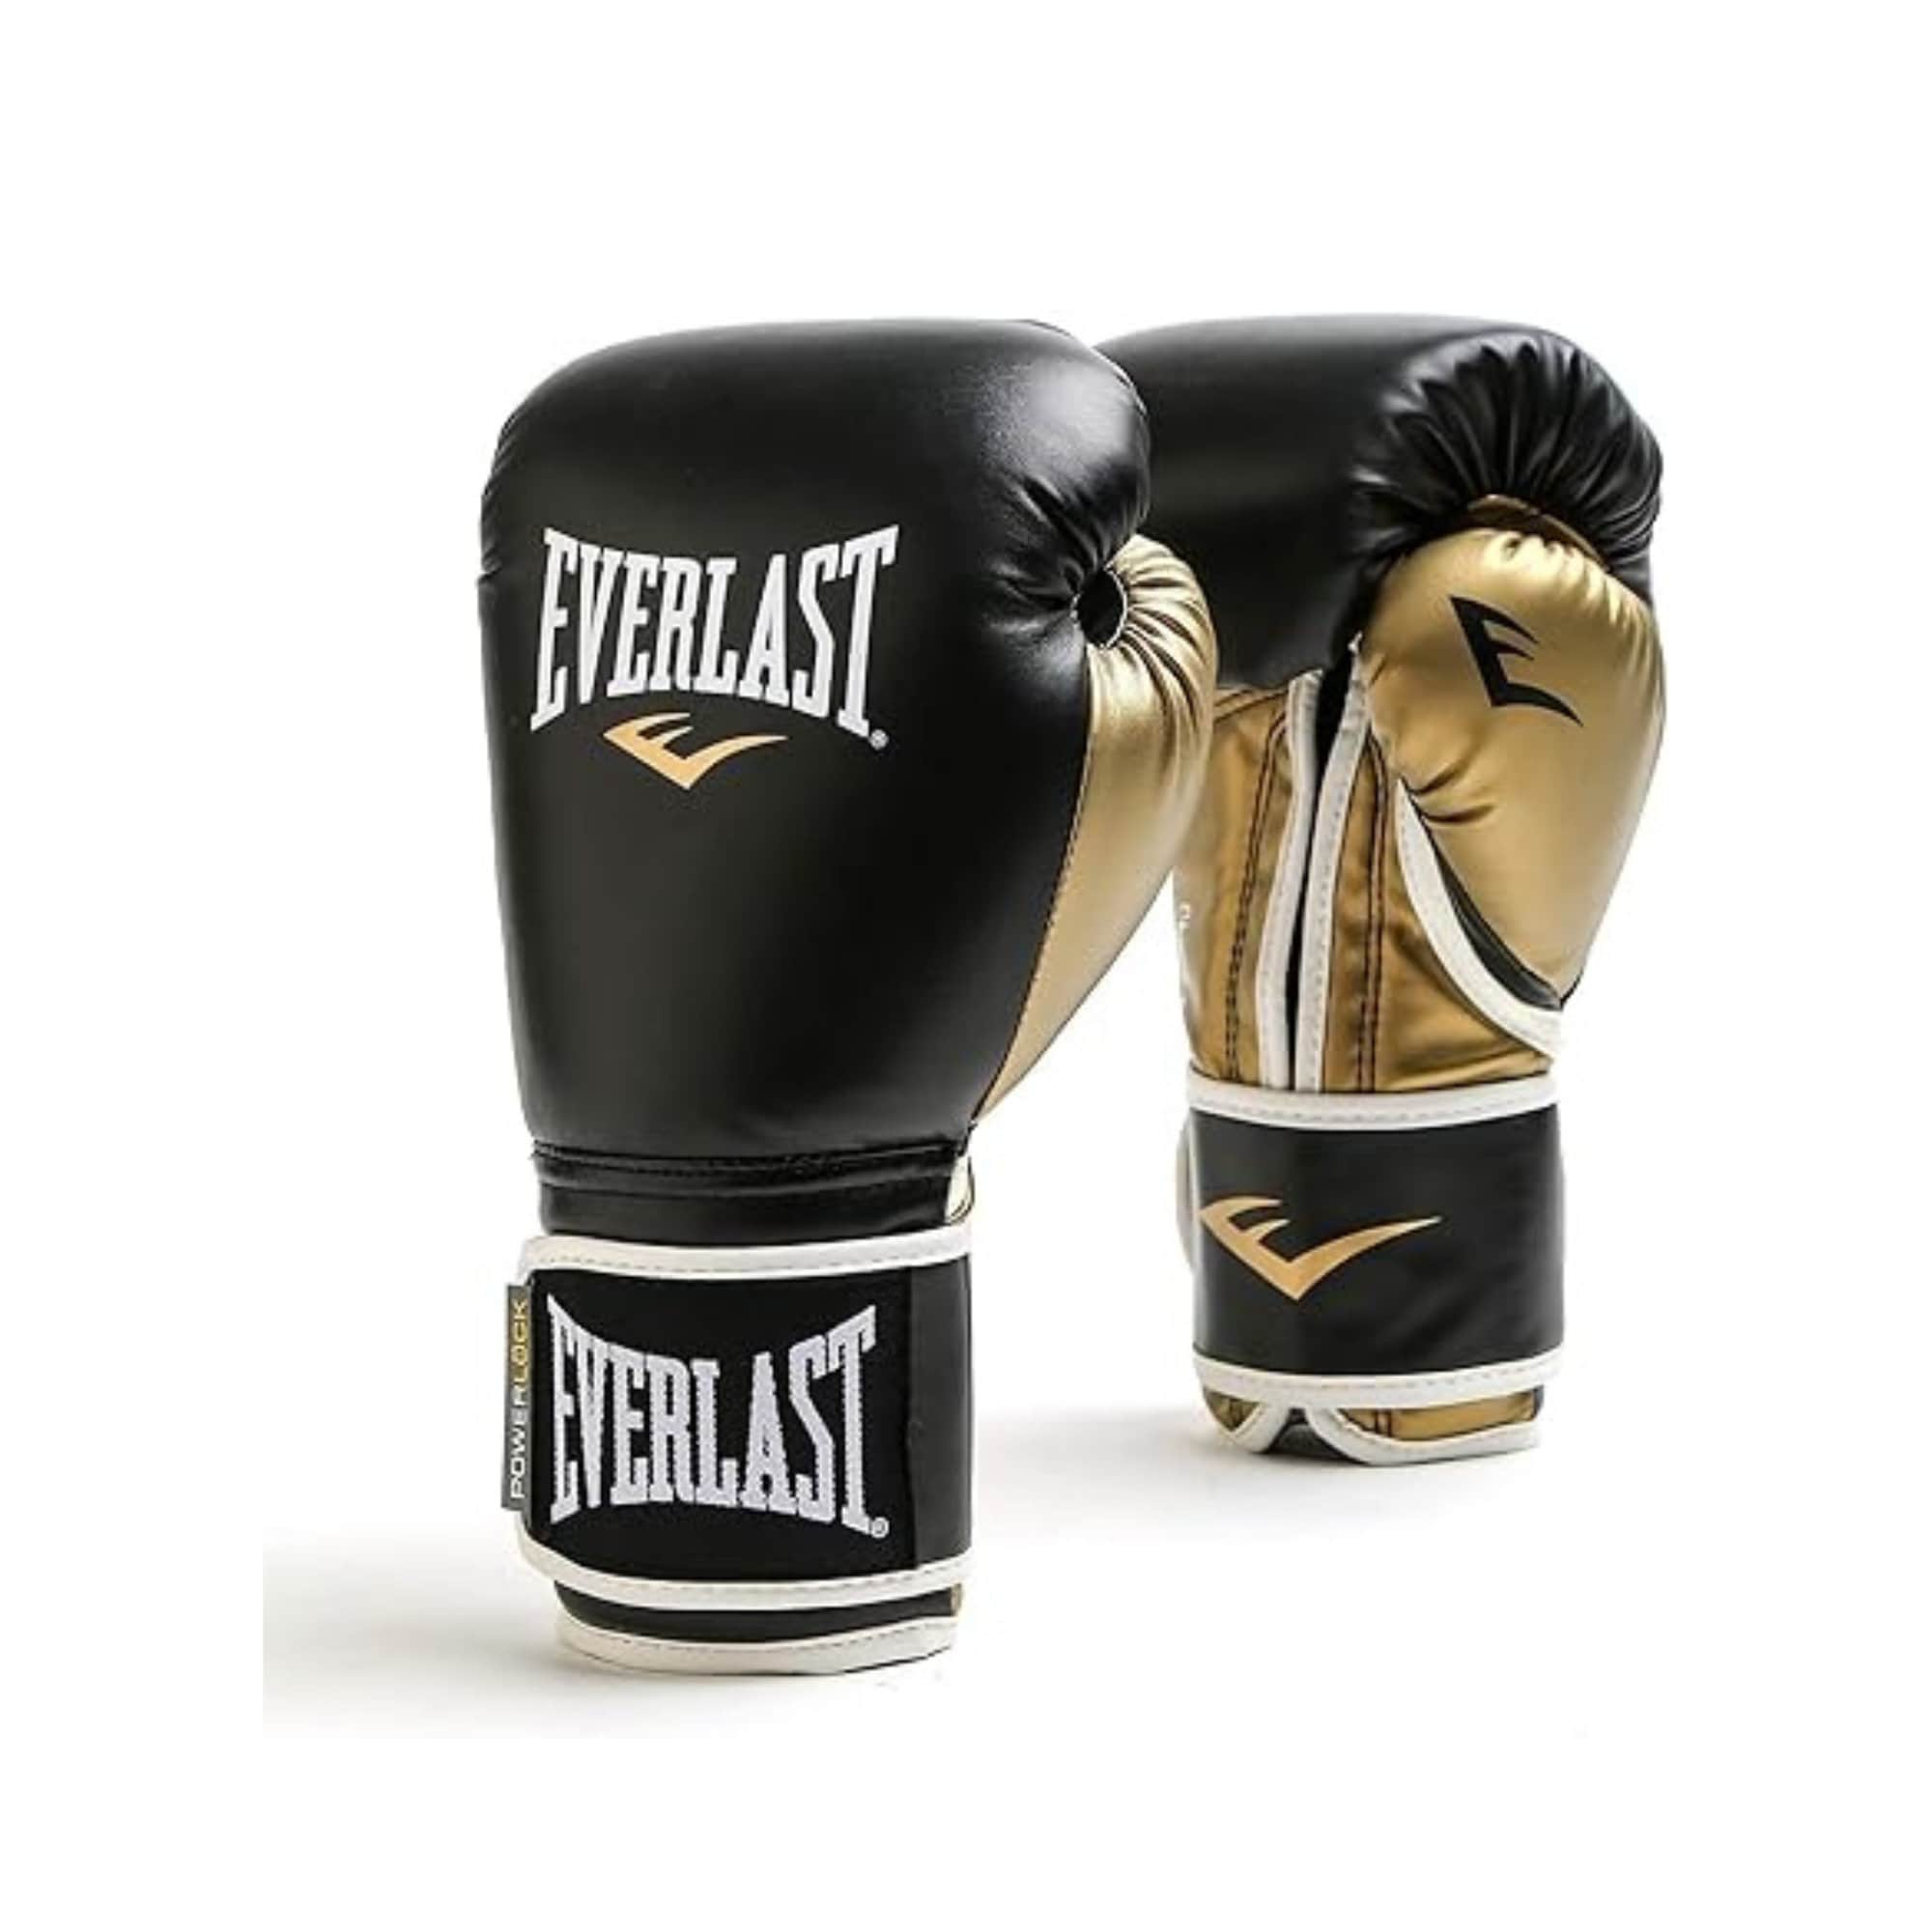 Buy Everlast Boxing Gloves Premium Quality Training Gloves for